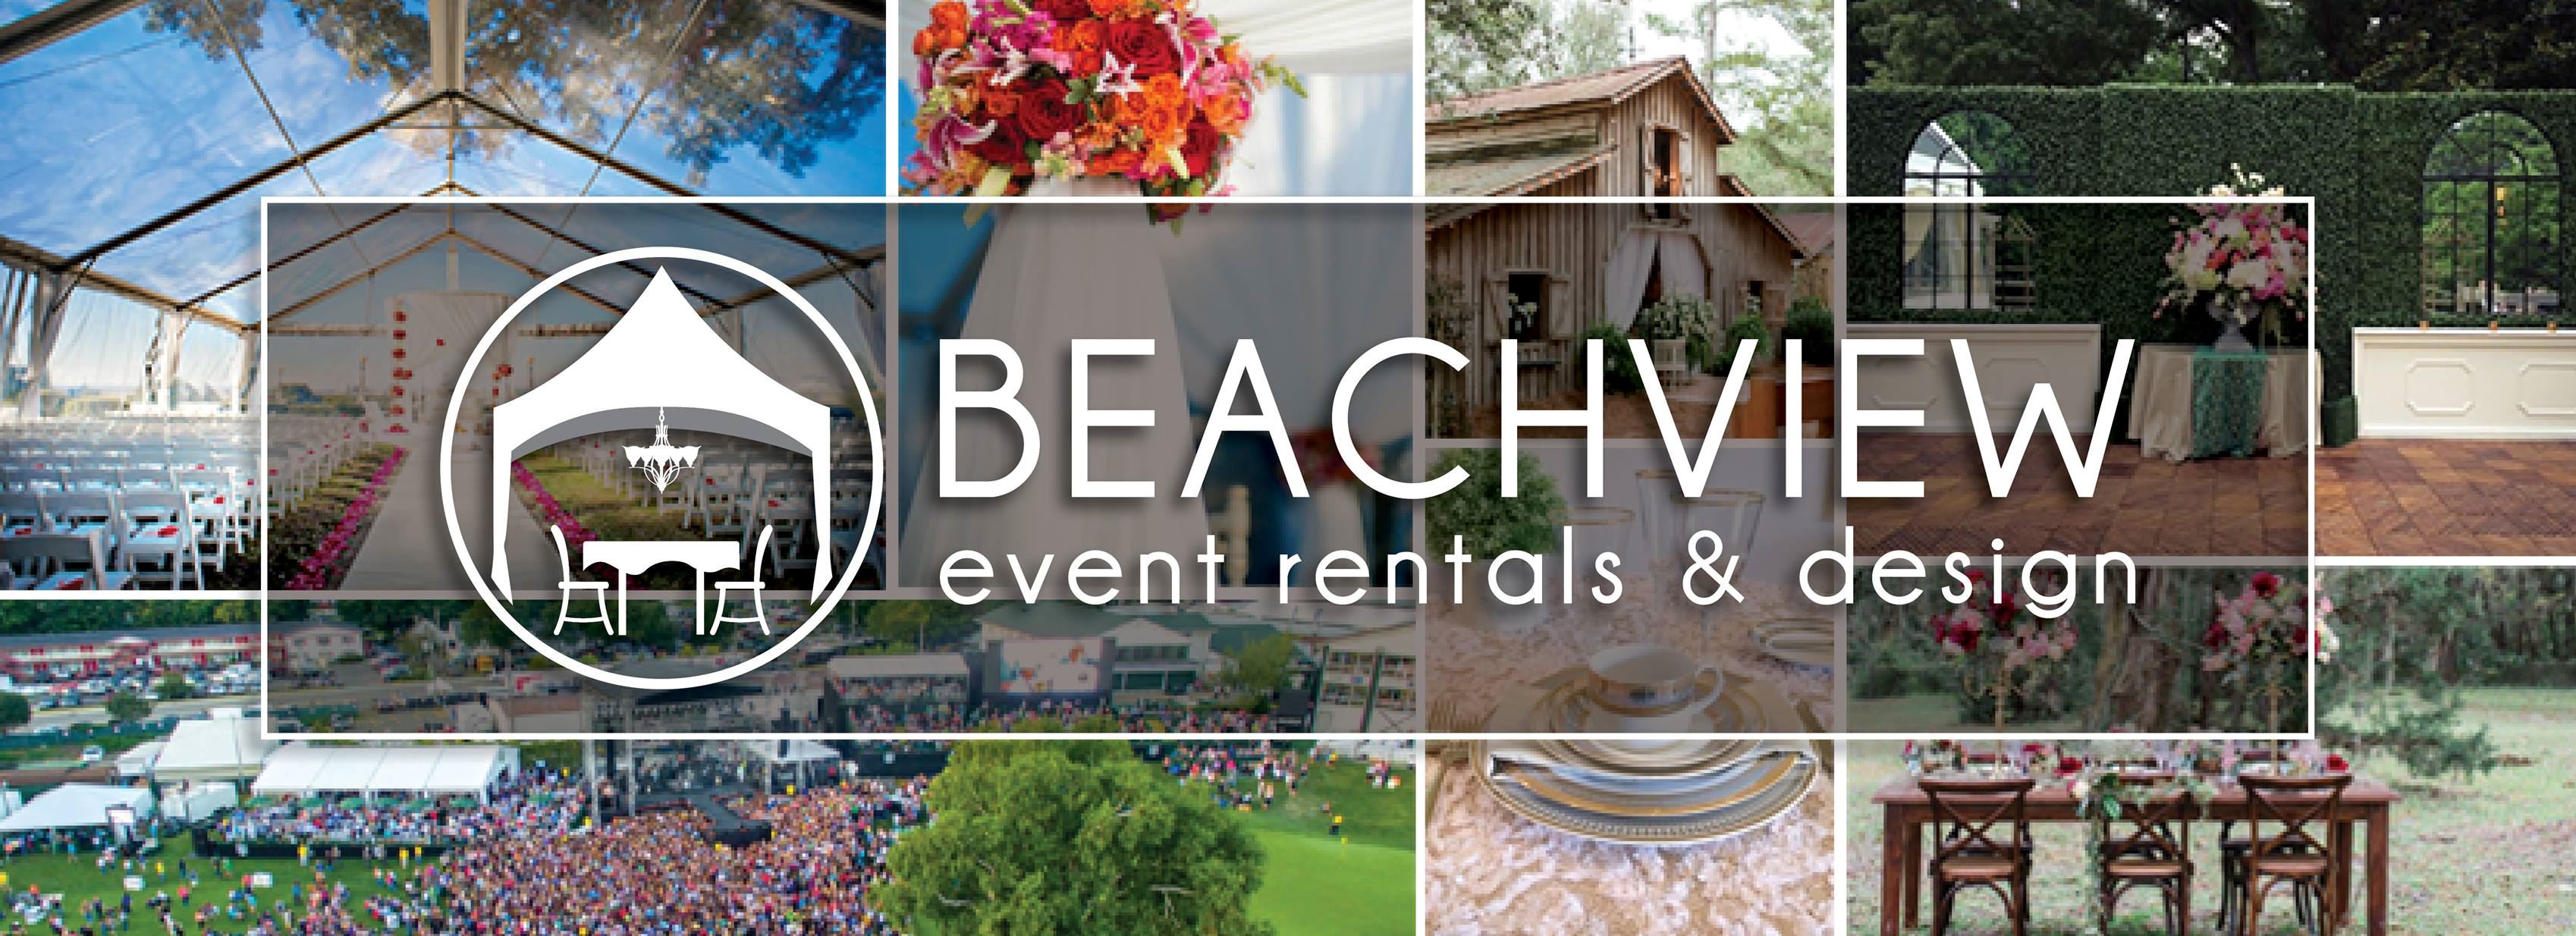 Beachview Event Rentals & Design Brunswick - 1